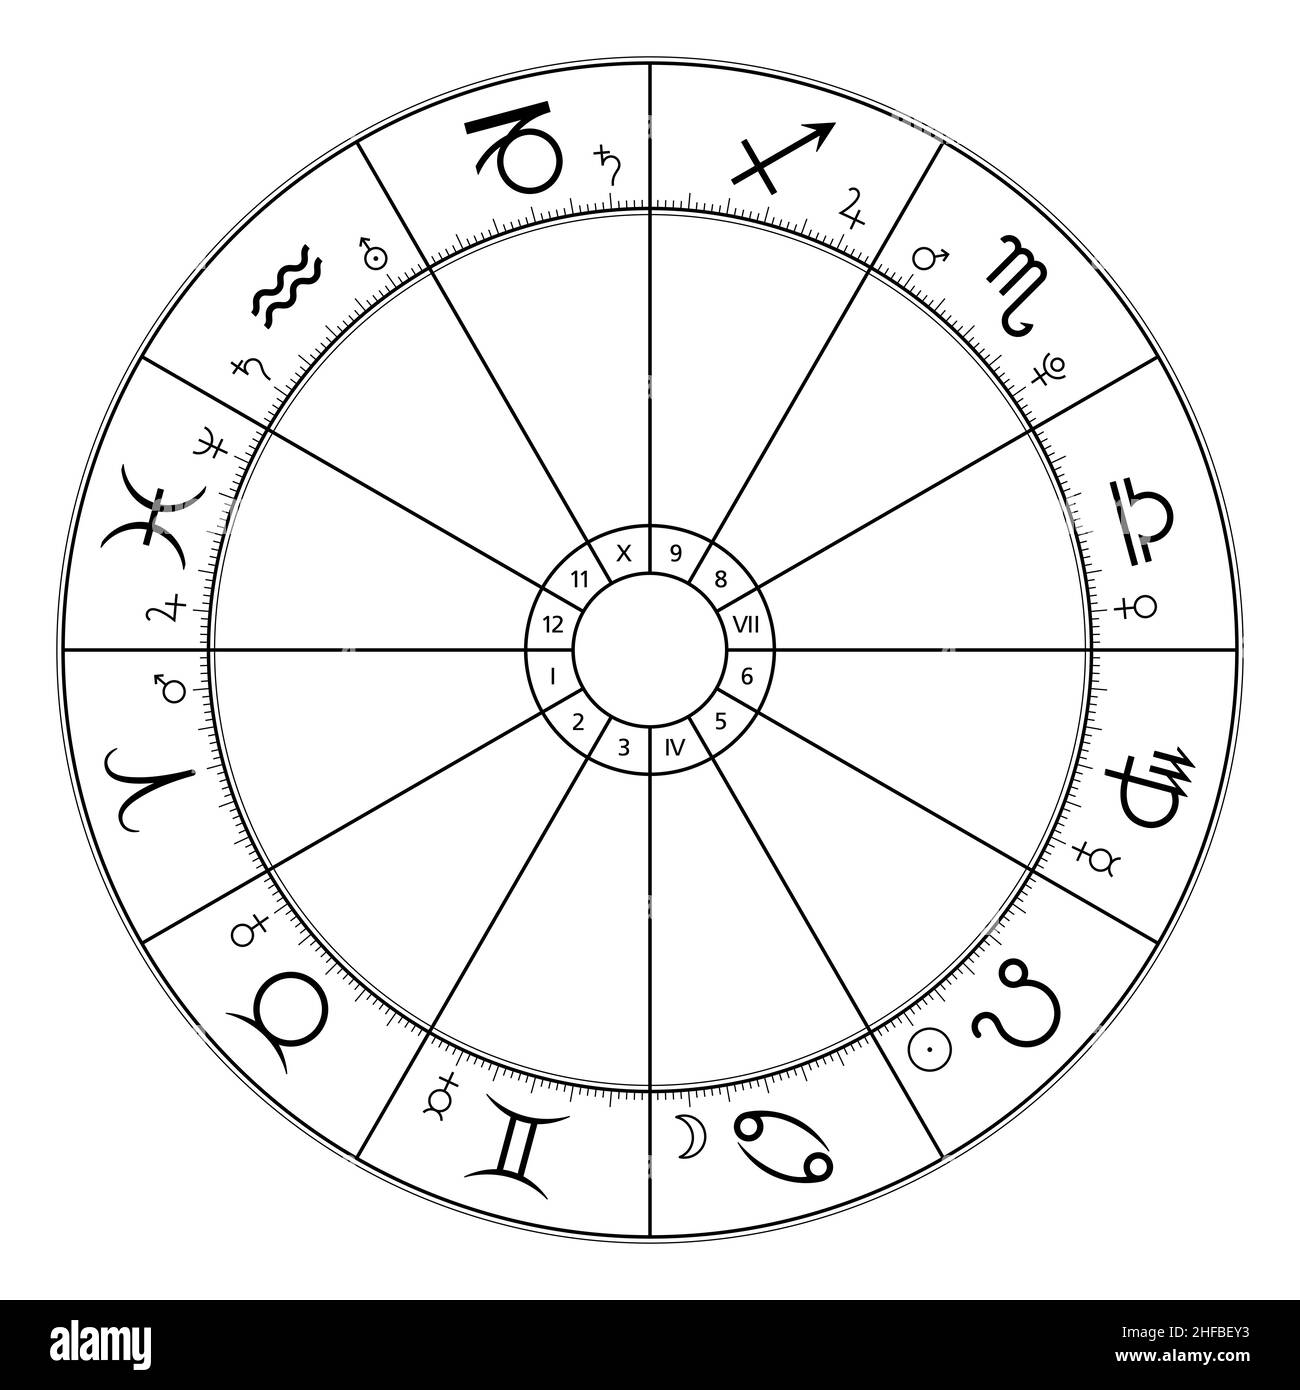 Cerchio zodiaco, grafico astrologico, che mostra dodici segni stellari, e simboli del pianeta di appartenenza. Ruota dello zodiaco, utilizzato nella moderna astrologia oroscopica. Foto Stock